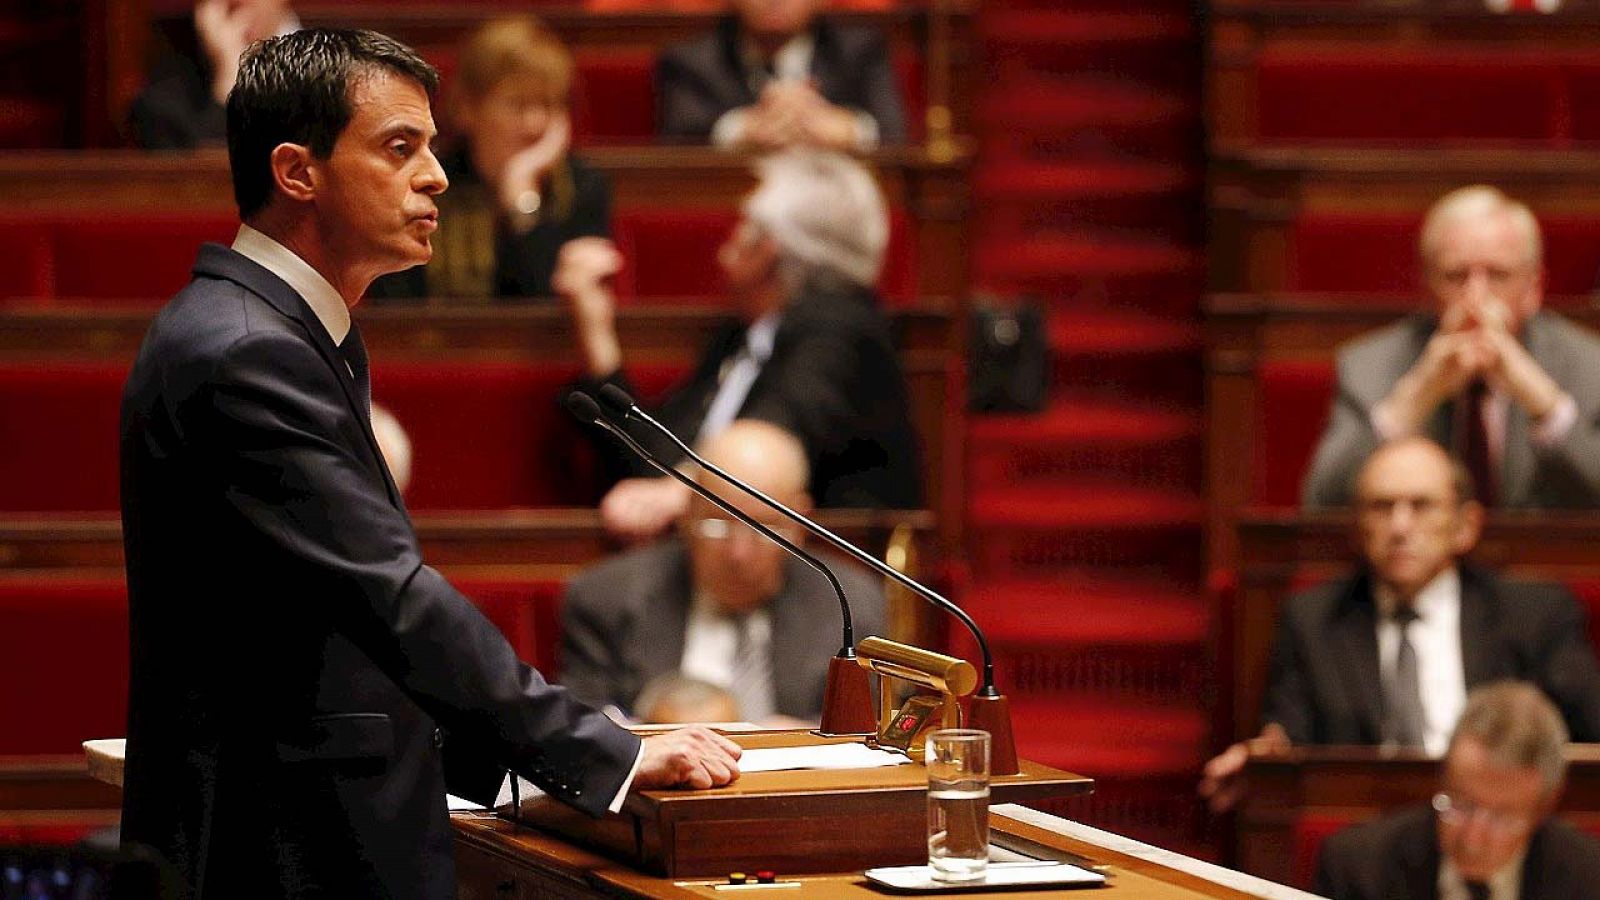 El primer ministro francés, Manuel Valls, se dirige a la Asamblea Nacional para solicitar la ampliación del estado de emergencia tras los atentados de París, el 19 de noviembre de 2015. AFP PHOTO / FRANCOIS GUILLOT